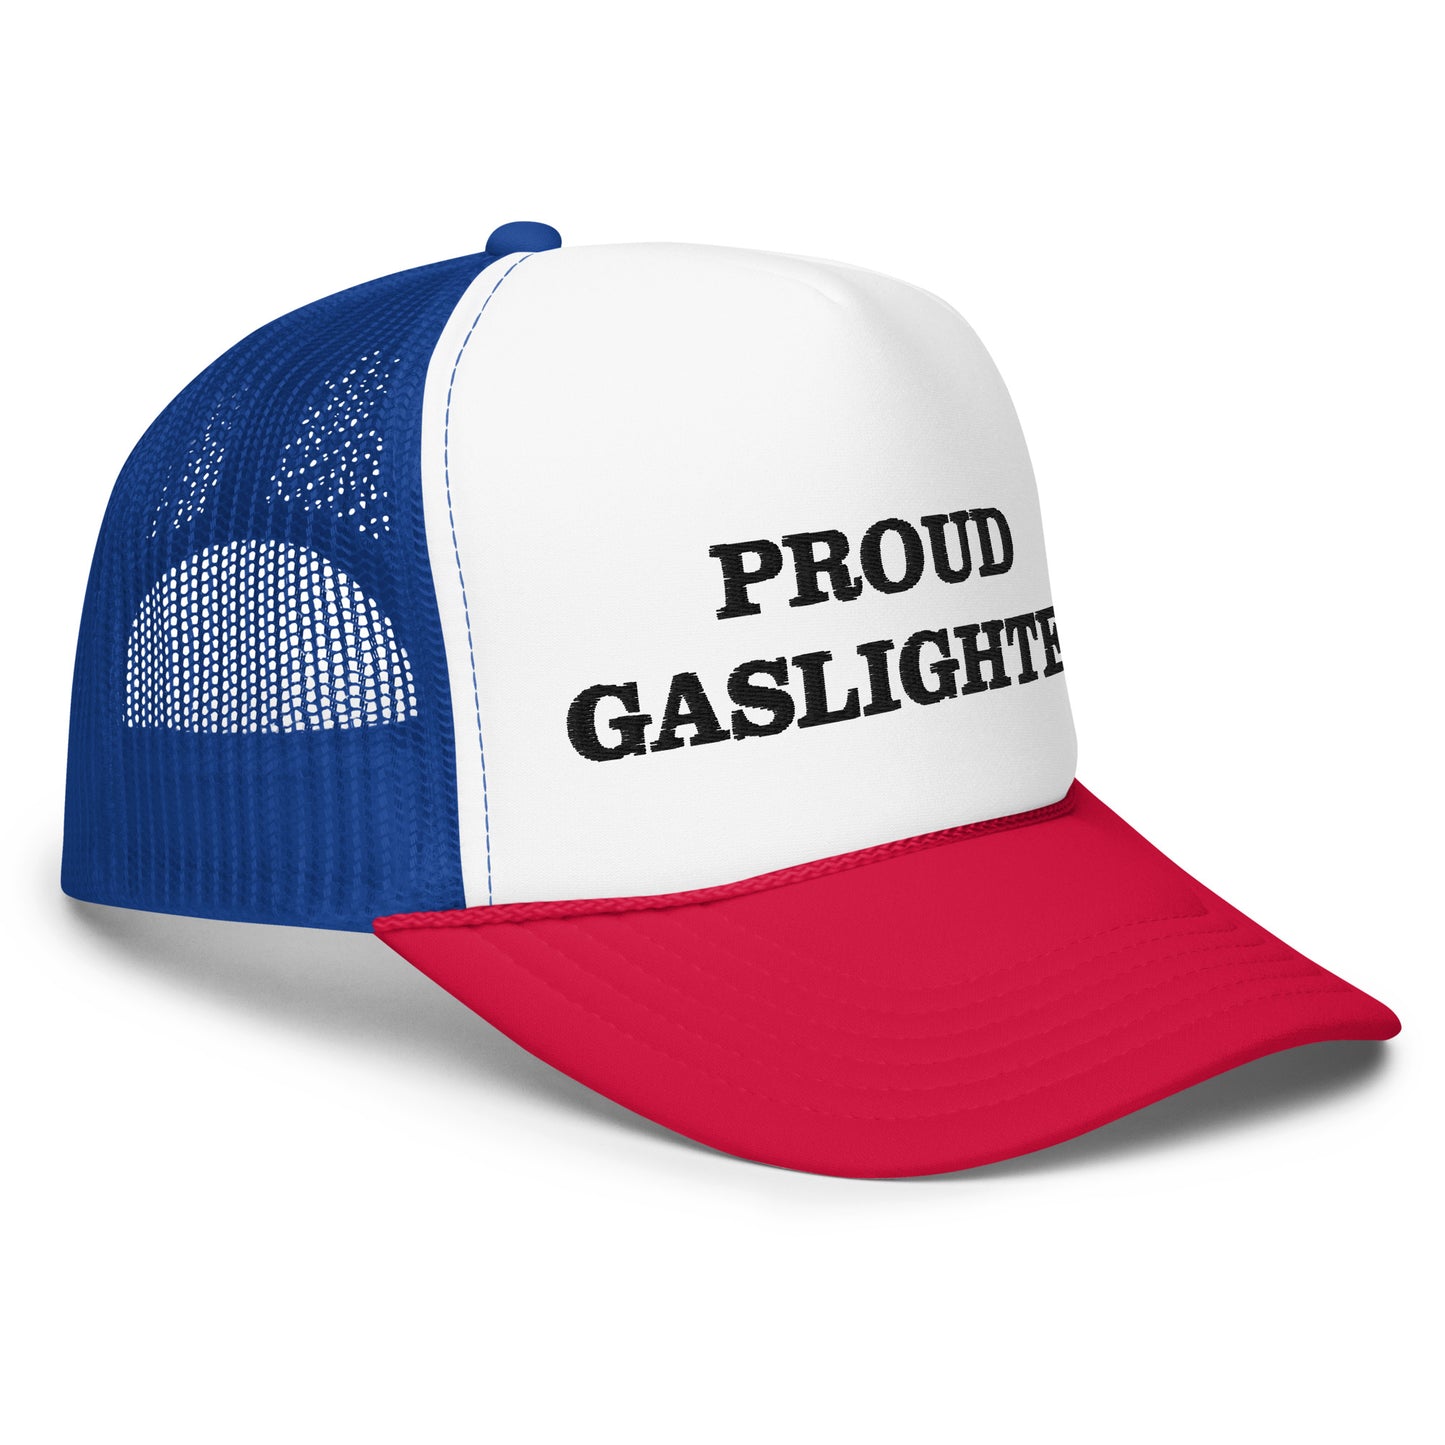 proud gaslighter hat